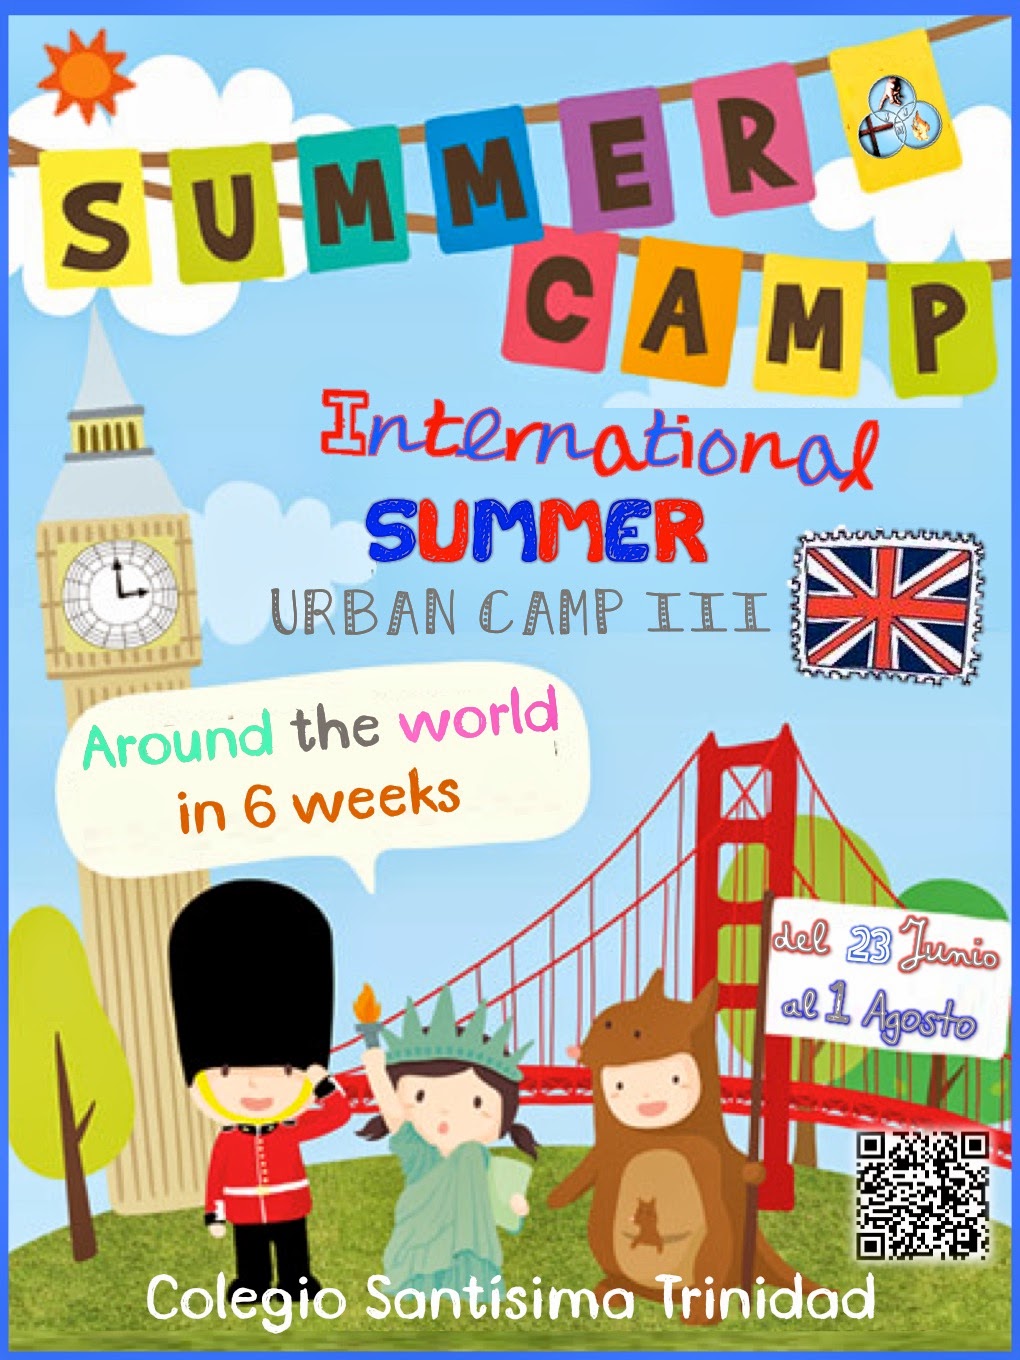  English Summer Urban Camp III